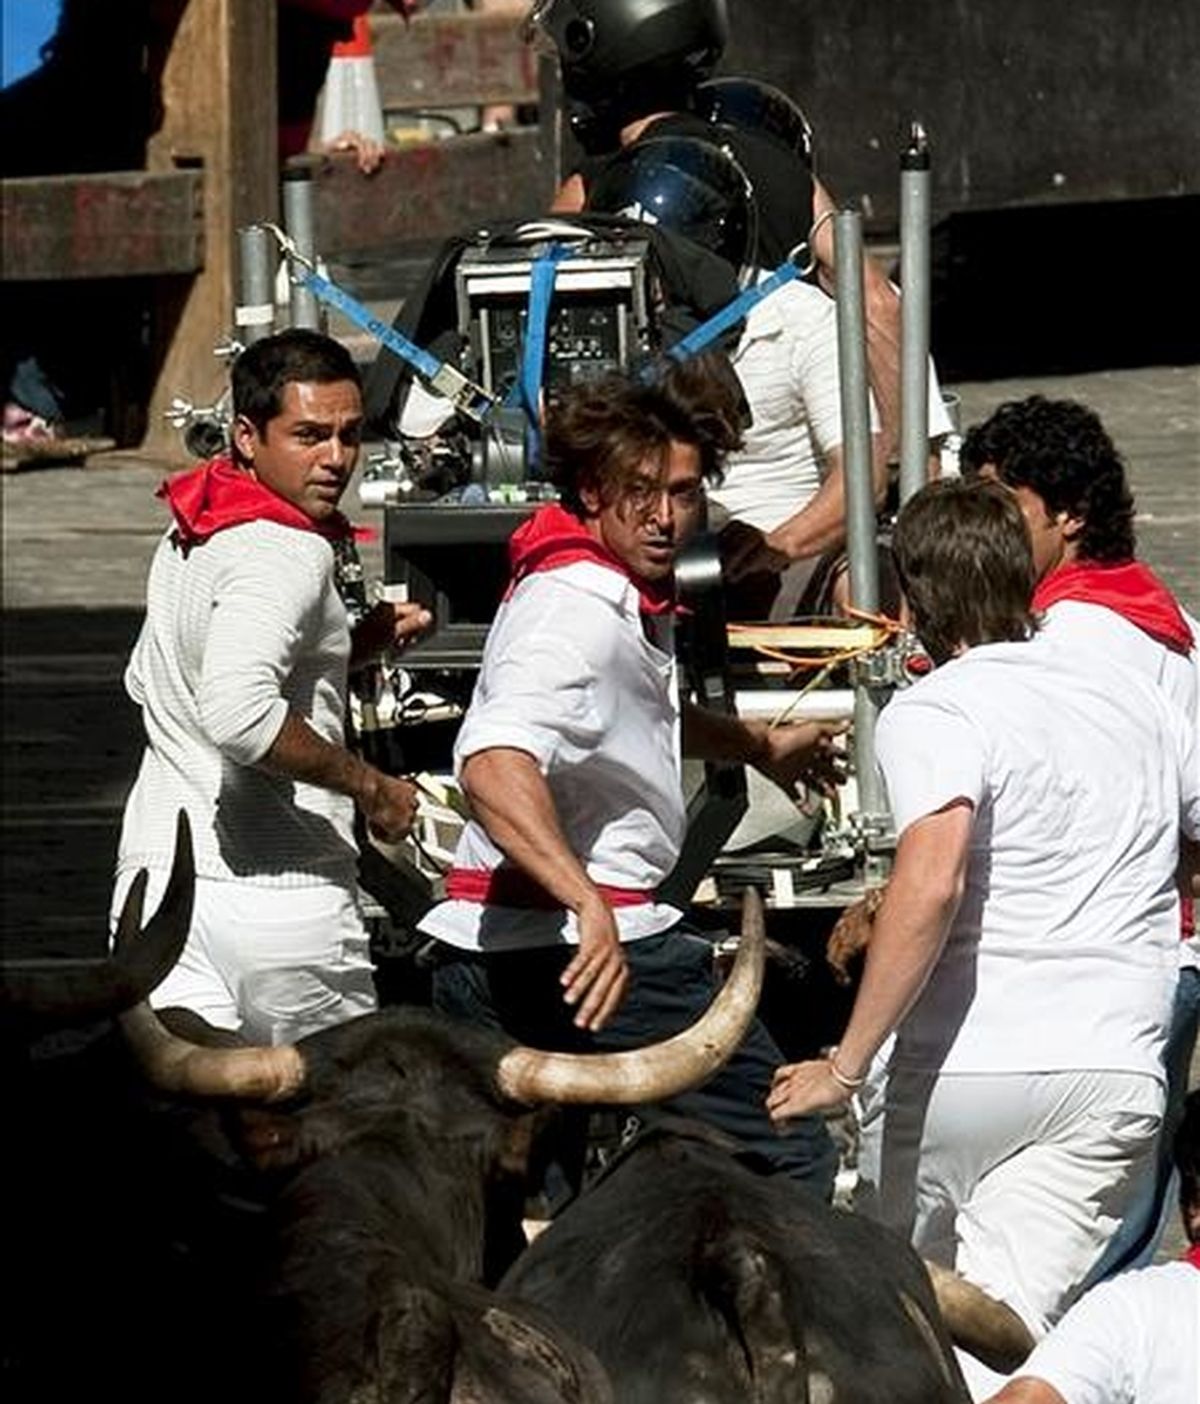 Los tres protagonistas corren delante de los astados durante la recreación de los encierros de los sanfermines en el rodaje en Pamplona de la película india "Zindagi milegi da dobara" ("Solo se vive una vez"), del director Zoya Akhtar, primer largometraje de la industria de Bollywood que se filma en España. EFE